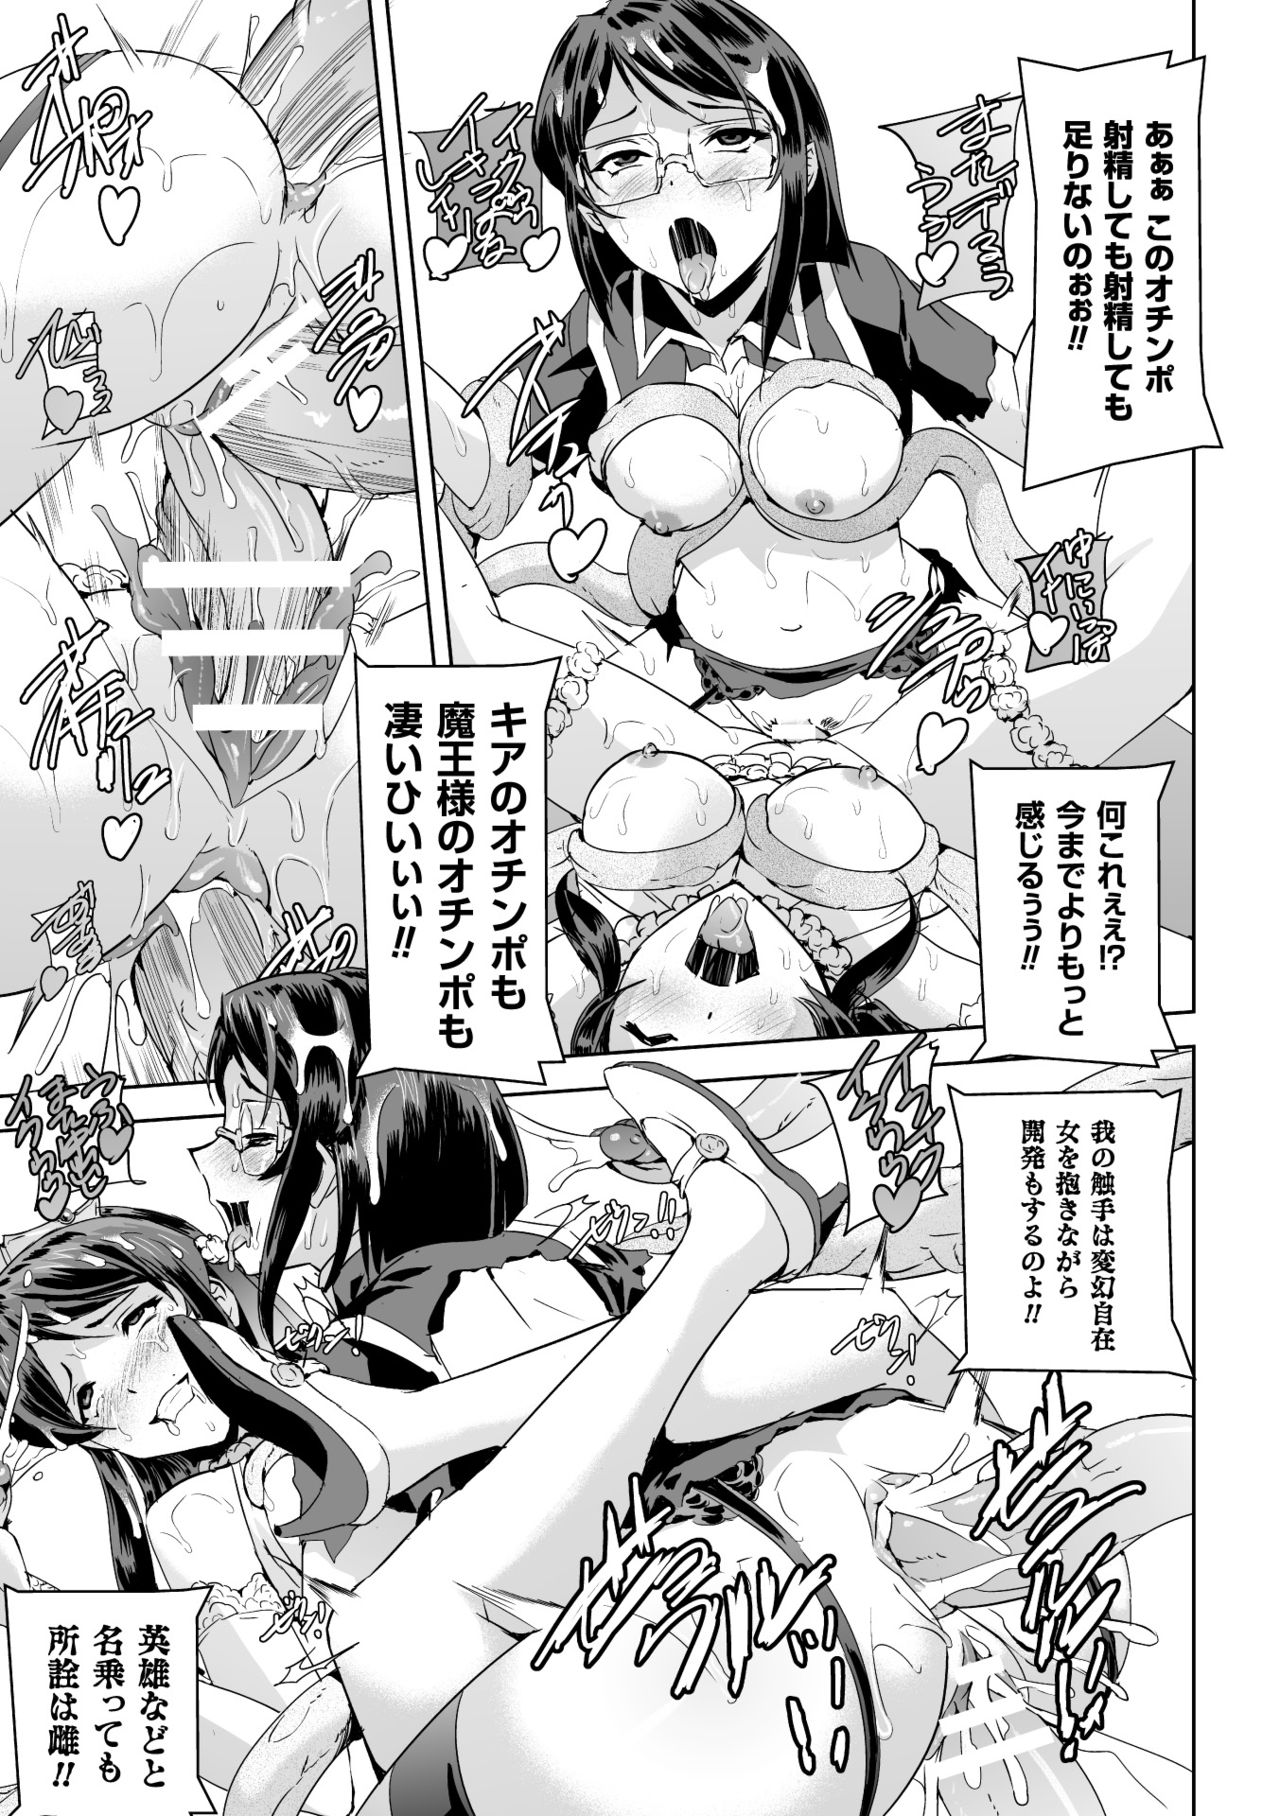 [Anthology] Seigi no Heroine Kangoku File Vol. 2 [Digital] page 41 full